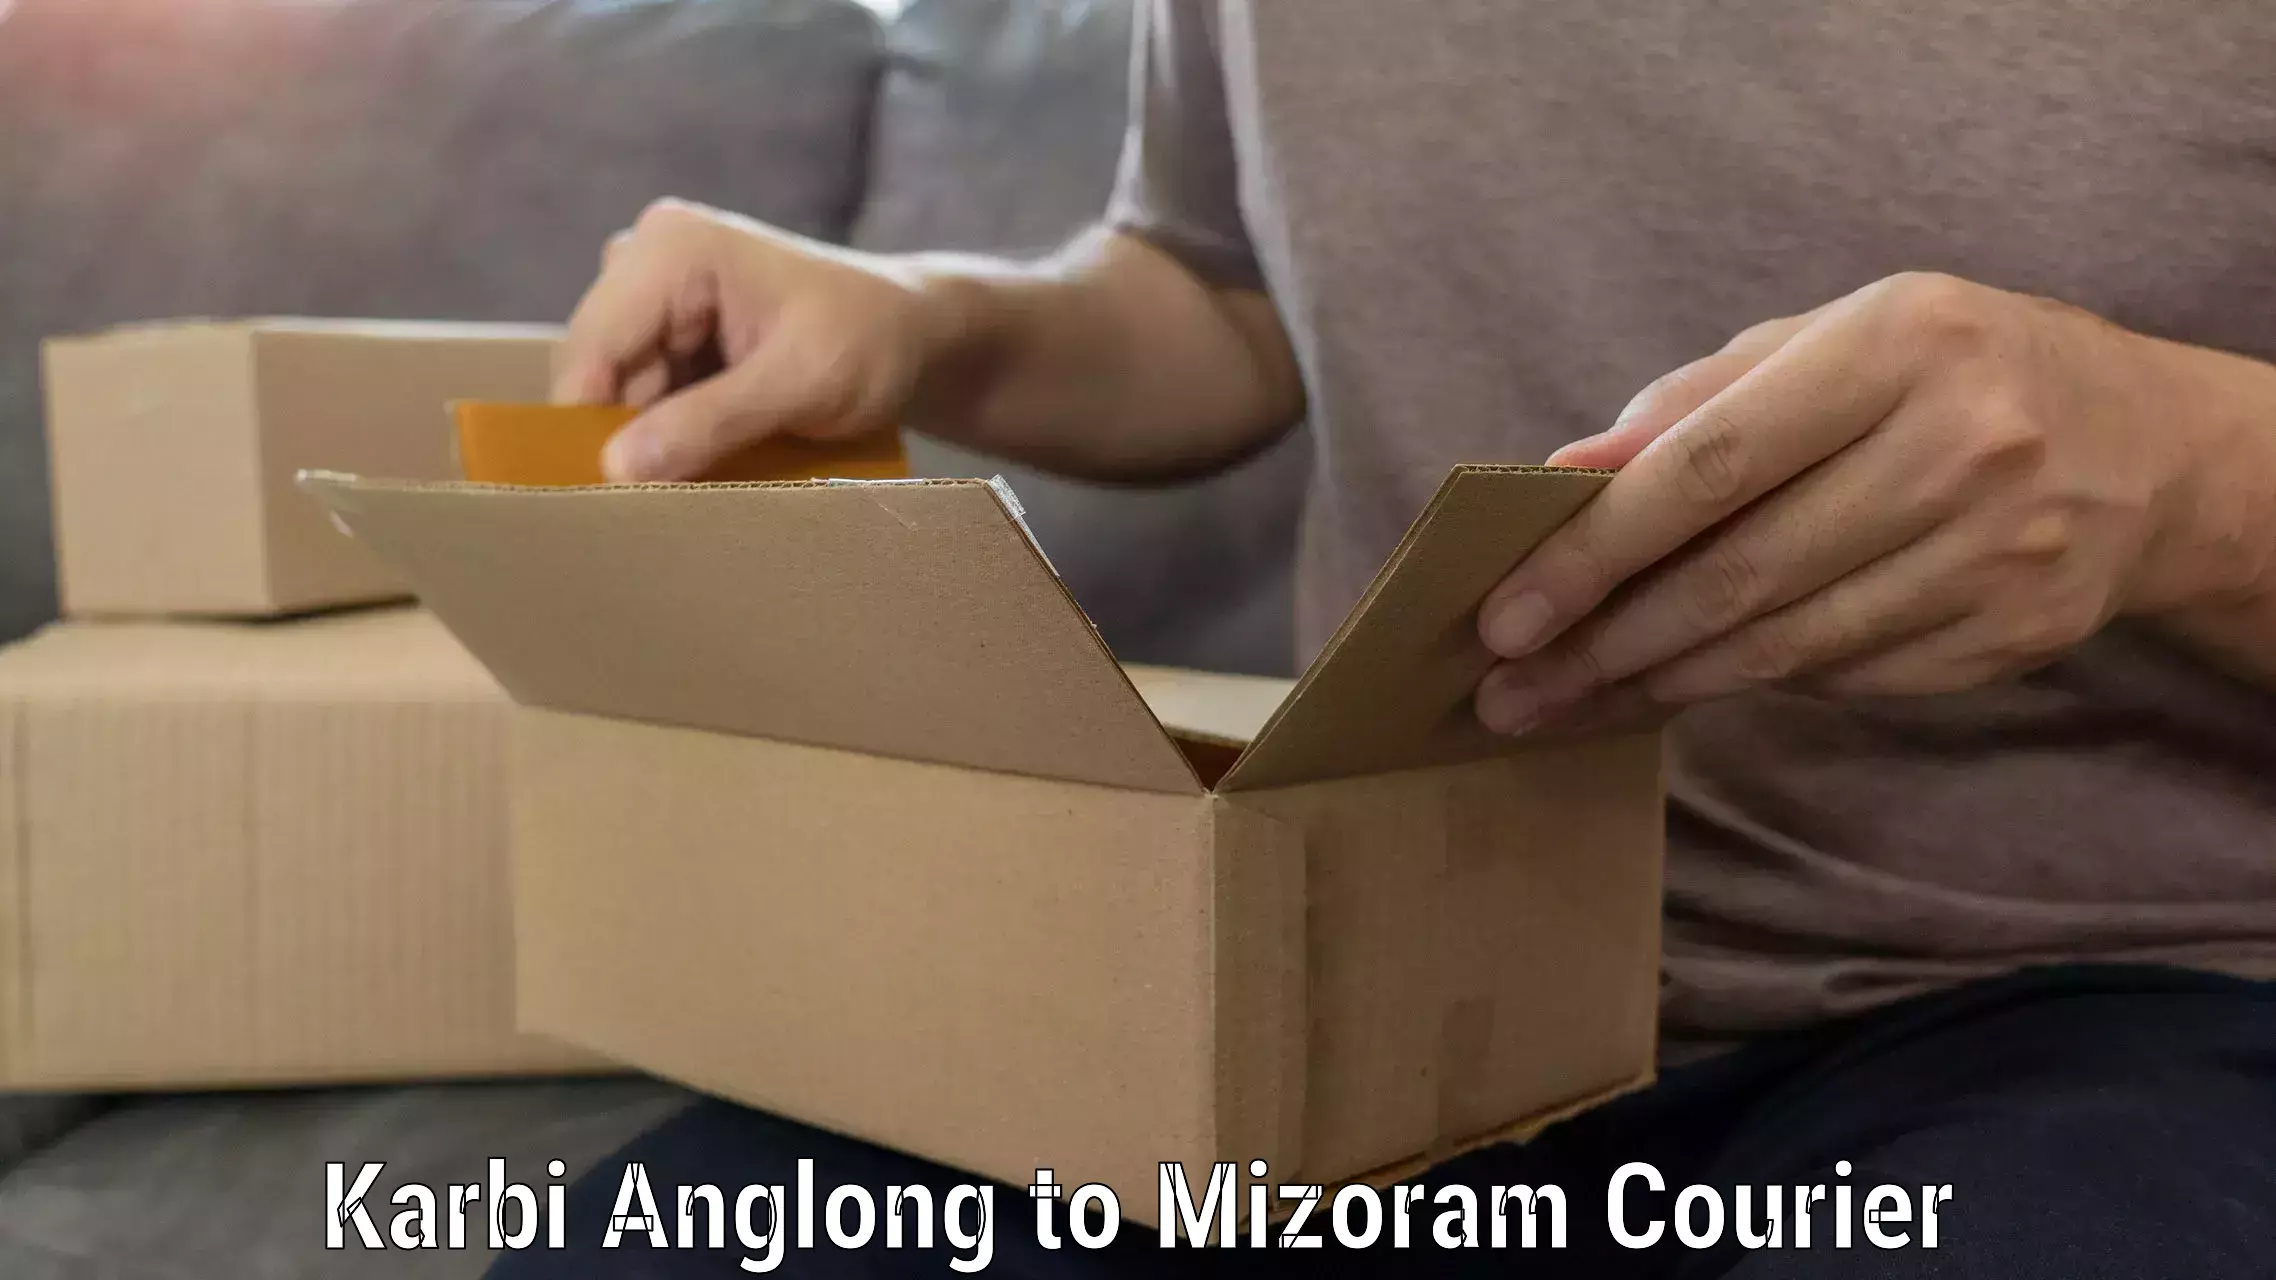 Furniture moving plans Karbi Anglong to Mizoram